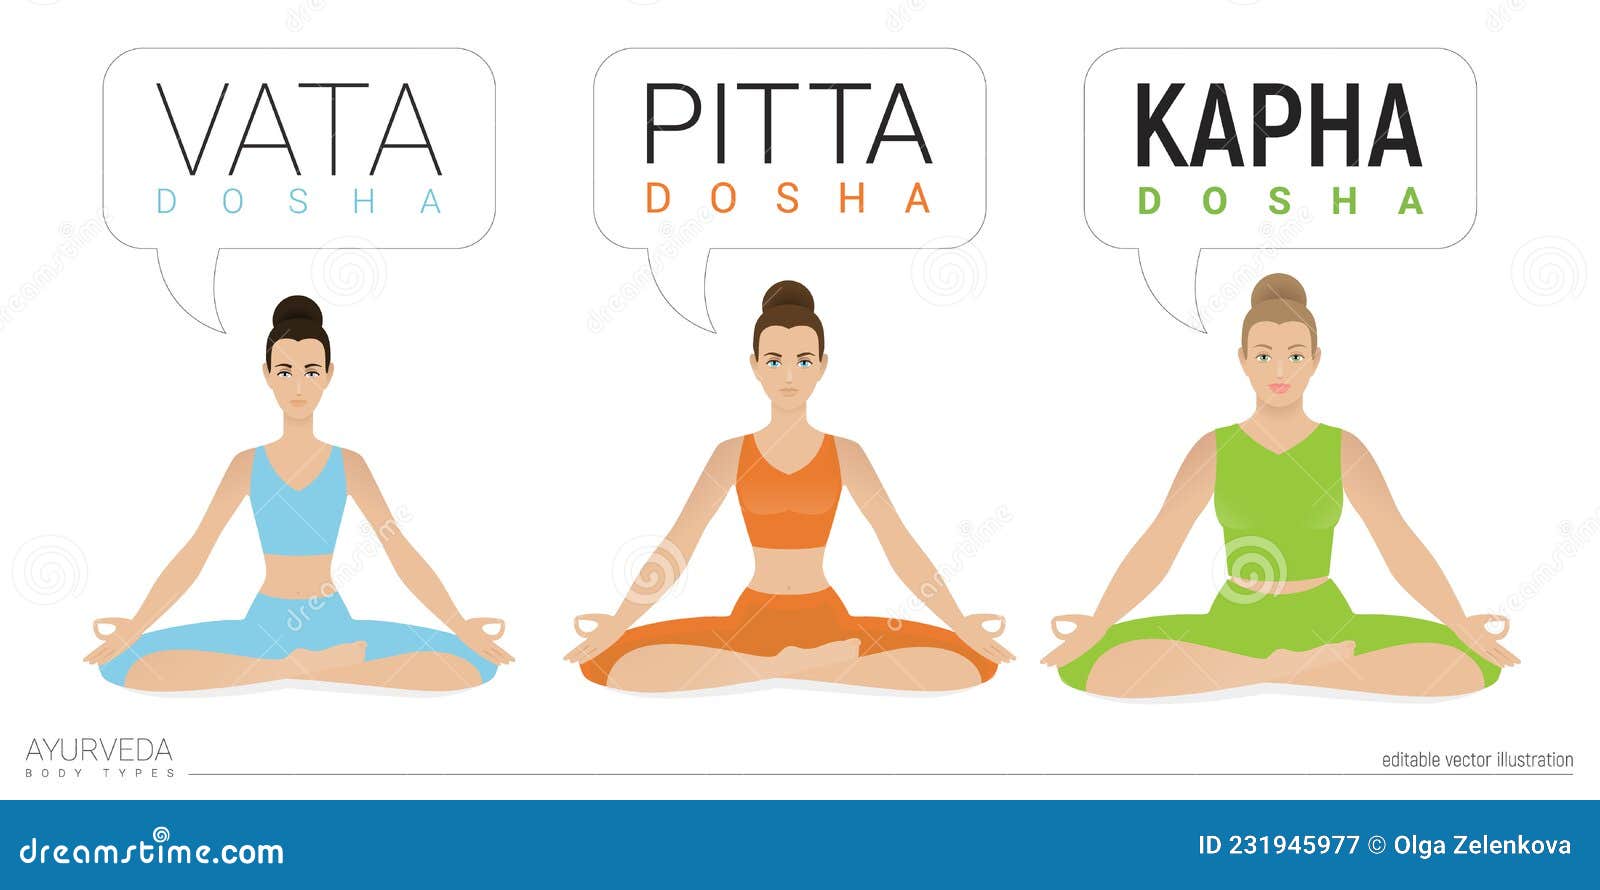 Ayurveda Body Types | The 3 Doshas - Vata Pitta Kapha – 7 Chakra Store